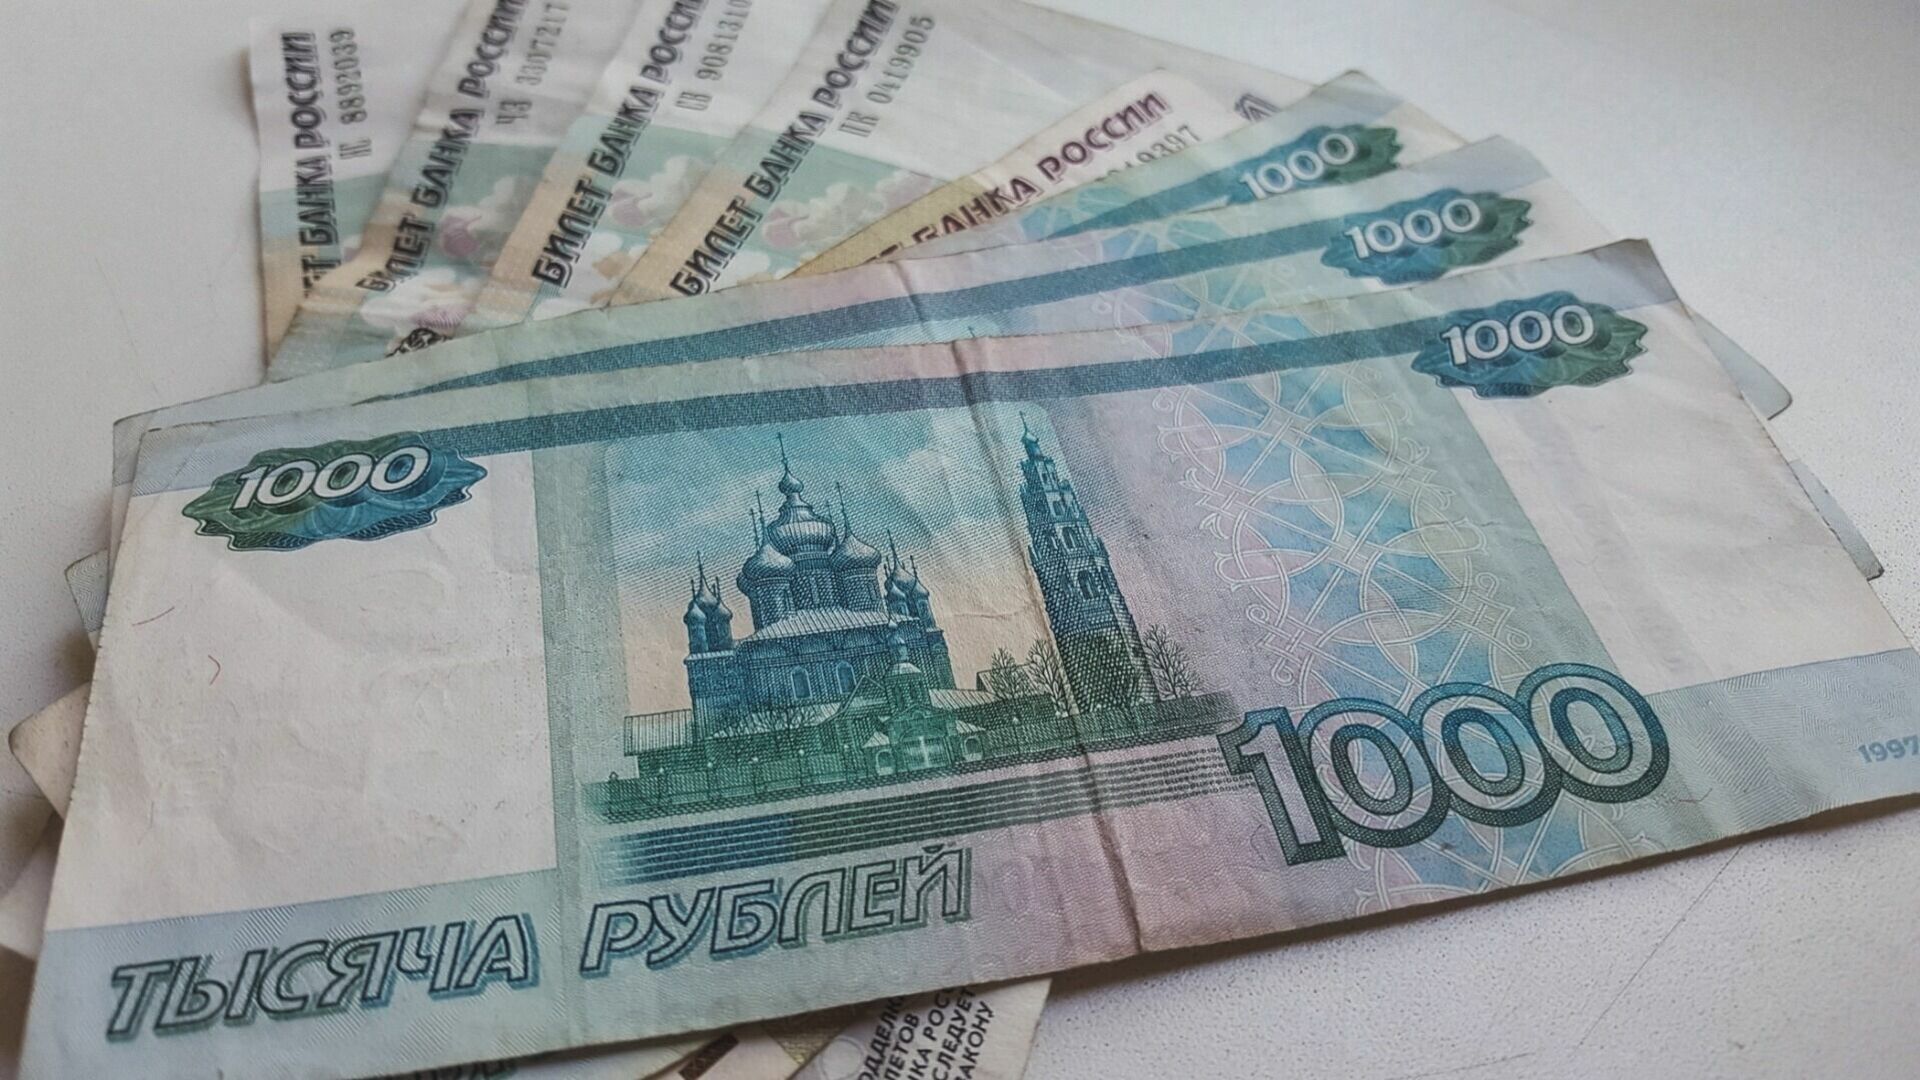 Пенсионерка выбросила из окна деньги по просьбе афериста в Хабаровске